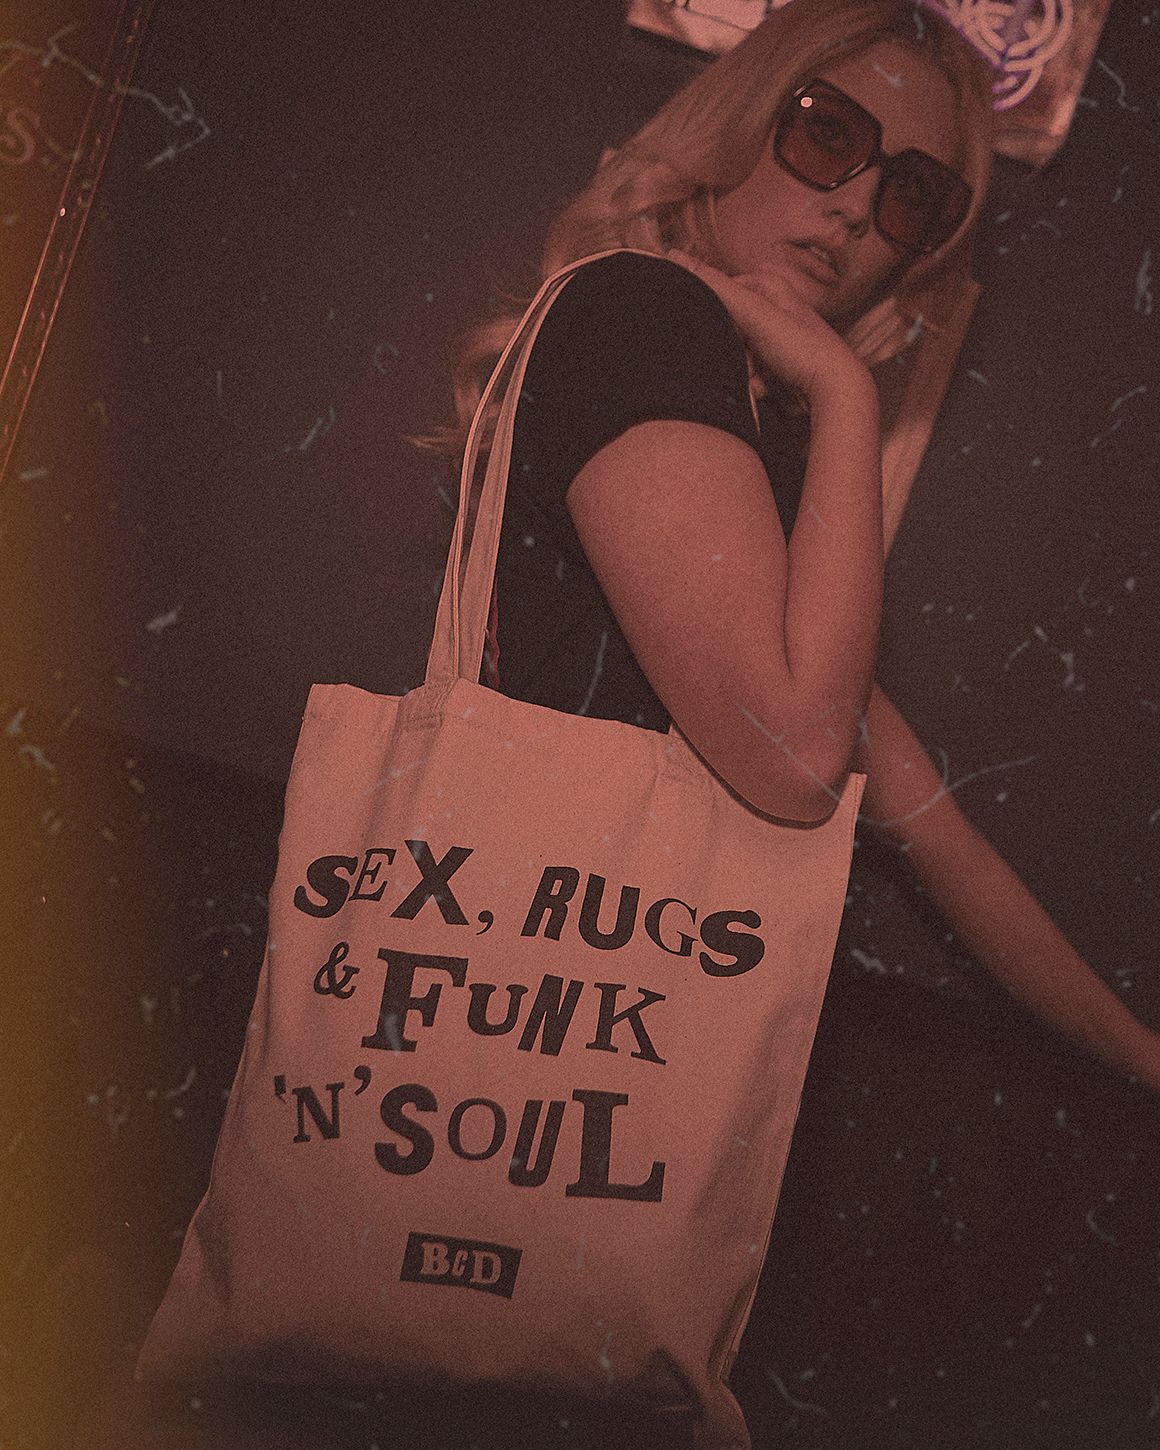 Sex Rugs & Funk 'n' Soul tote bag.